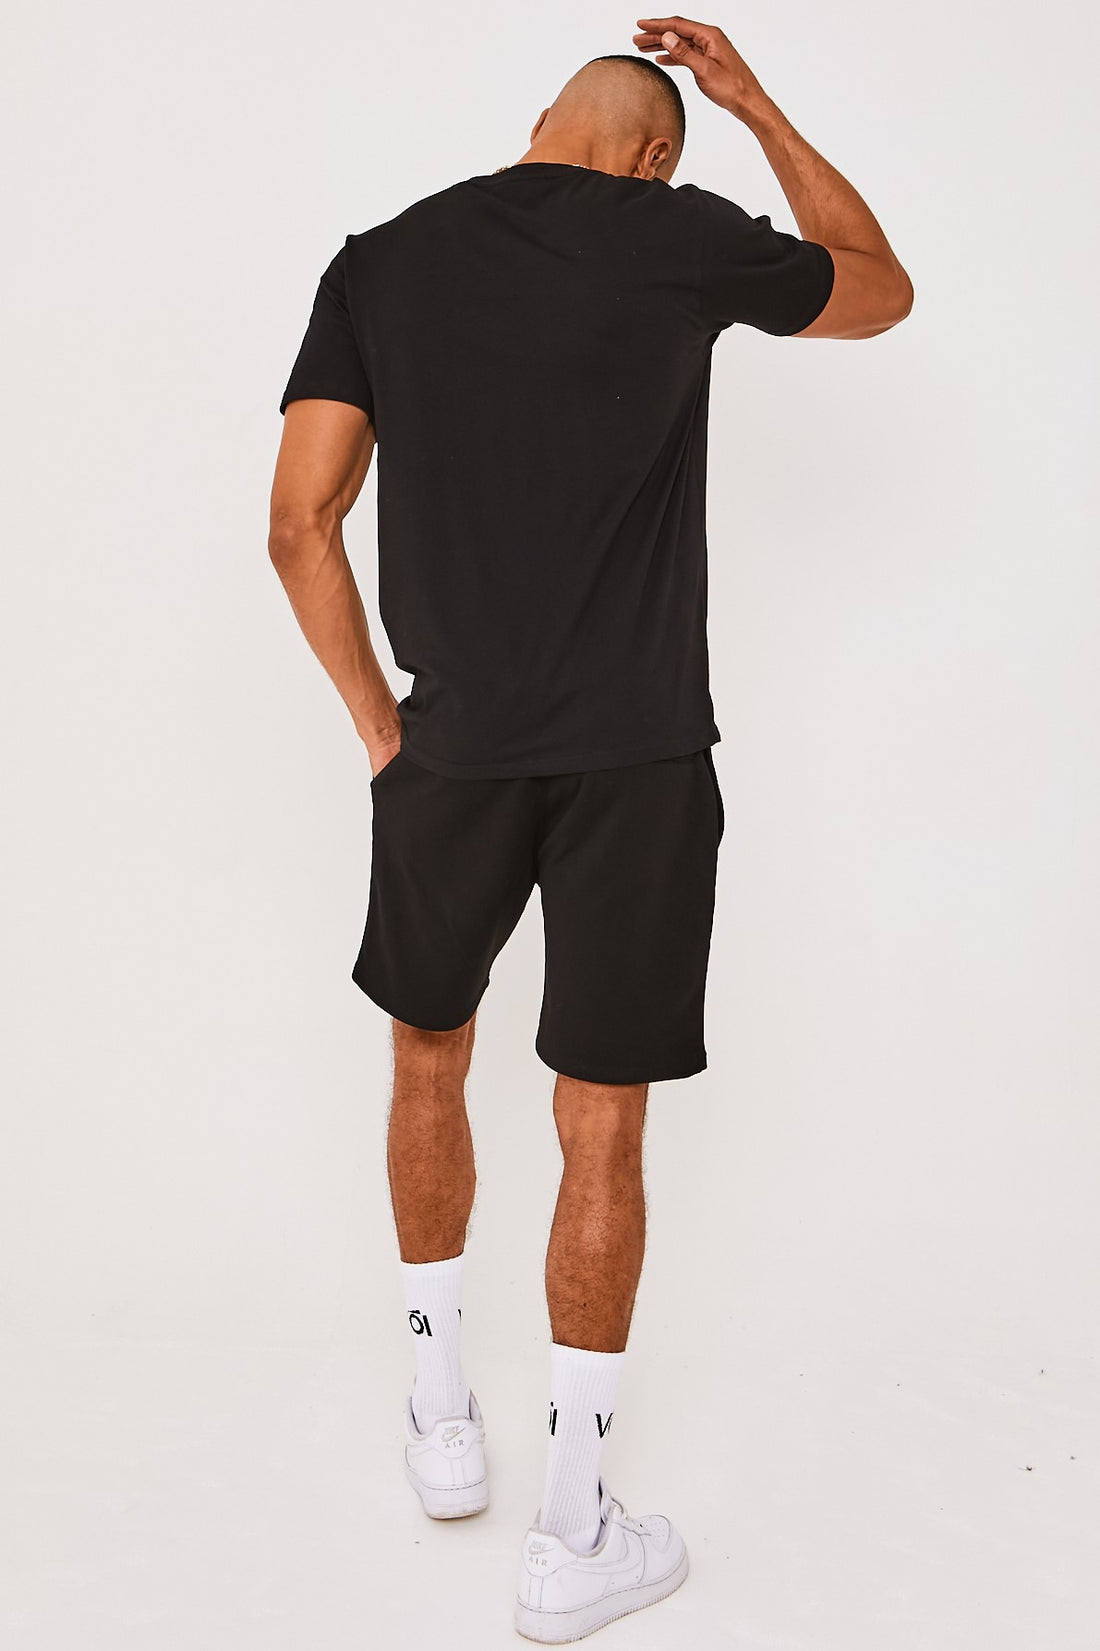 Voi Pinner T-Shirt & Short Set - Black